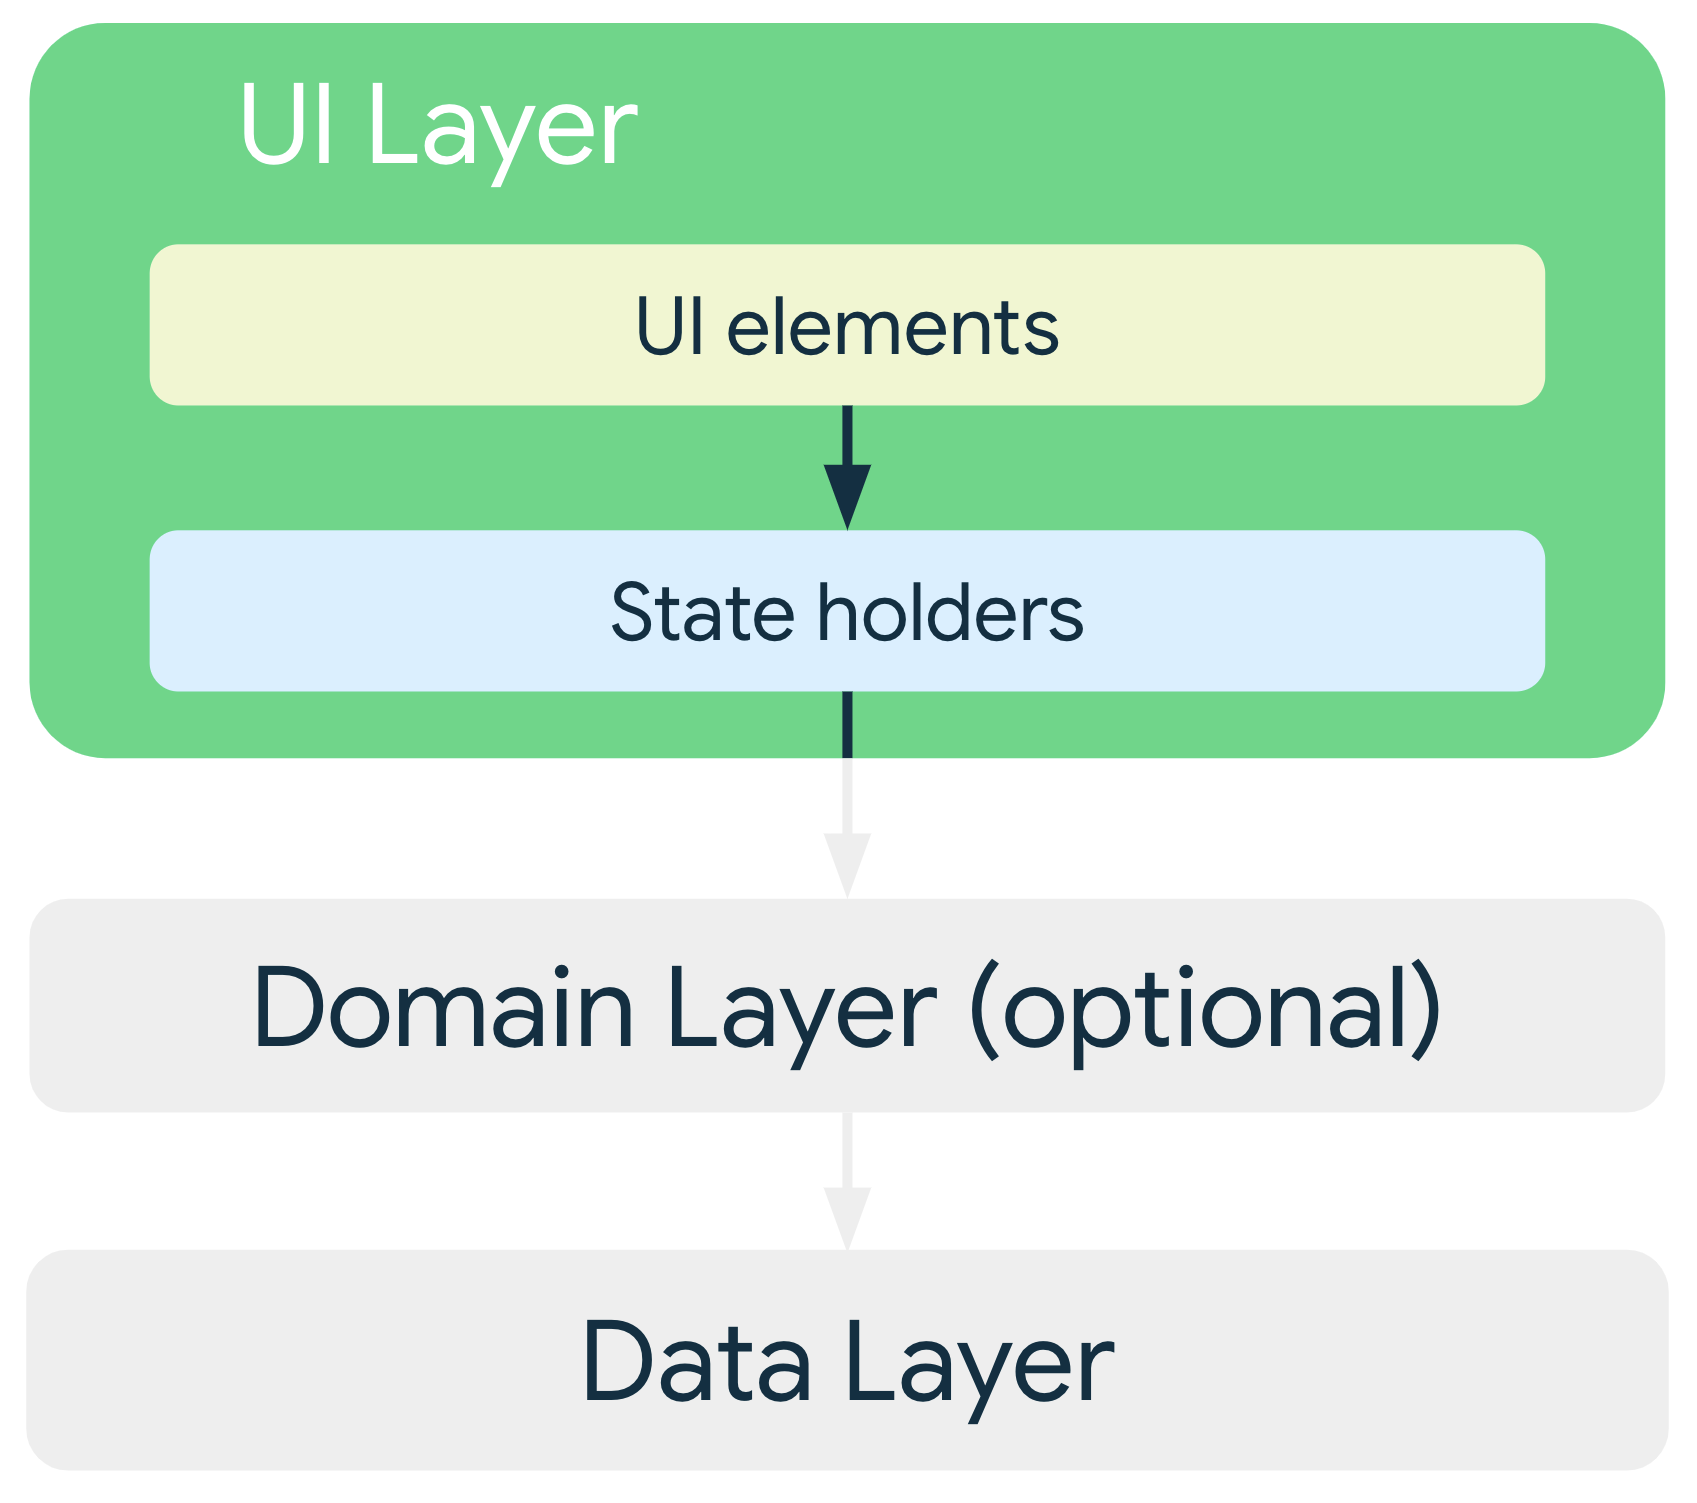 在一般架構中，UI 層的 UI 元素是取決於狀態持有者，而後者則取決於資料層或選用網域層的類別。